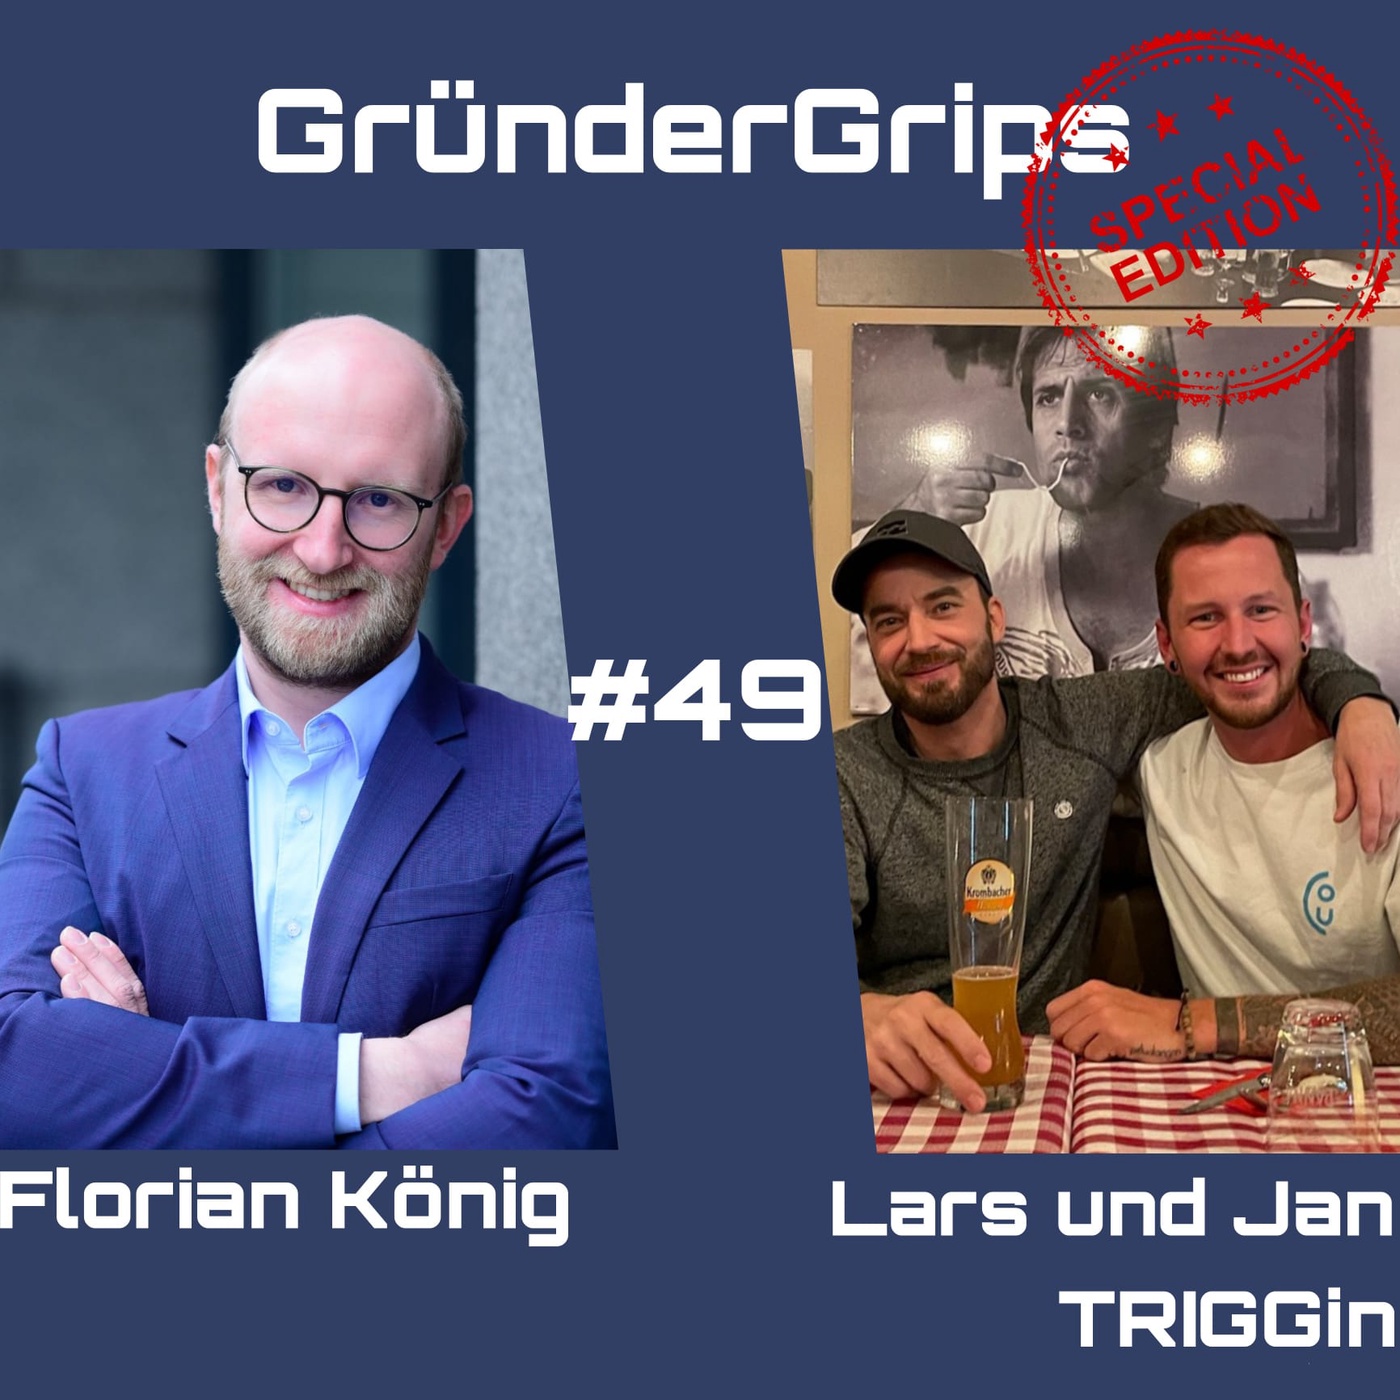 GG #49 mit Jan und Lars von TRIGGin: Aus einem Skateboard-Unfall entstand ein erfolgreiches Produkt zur Schmerzlinderung